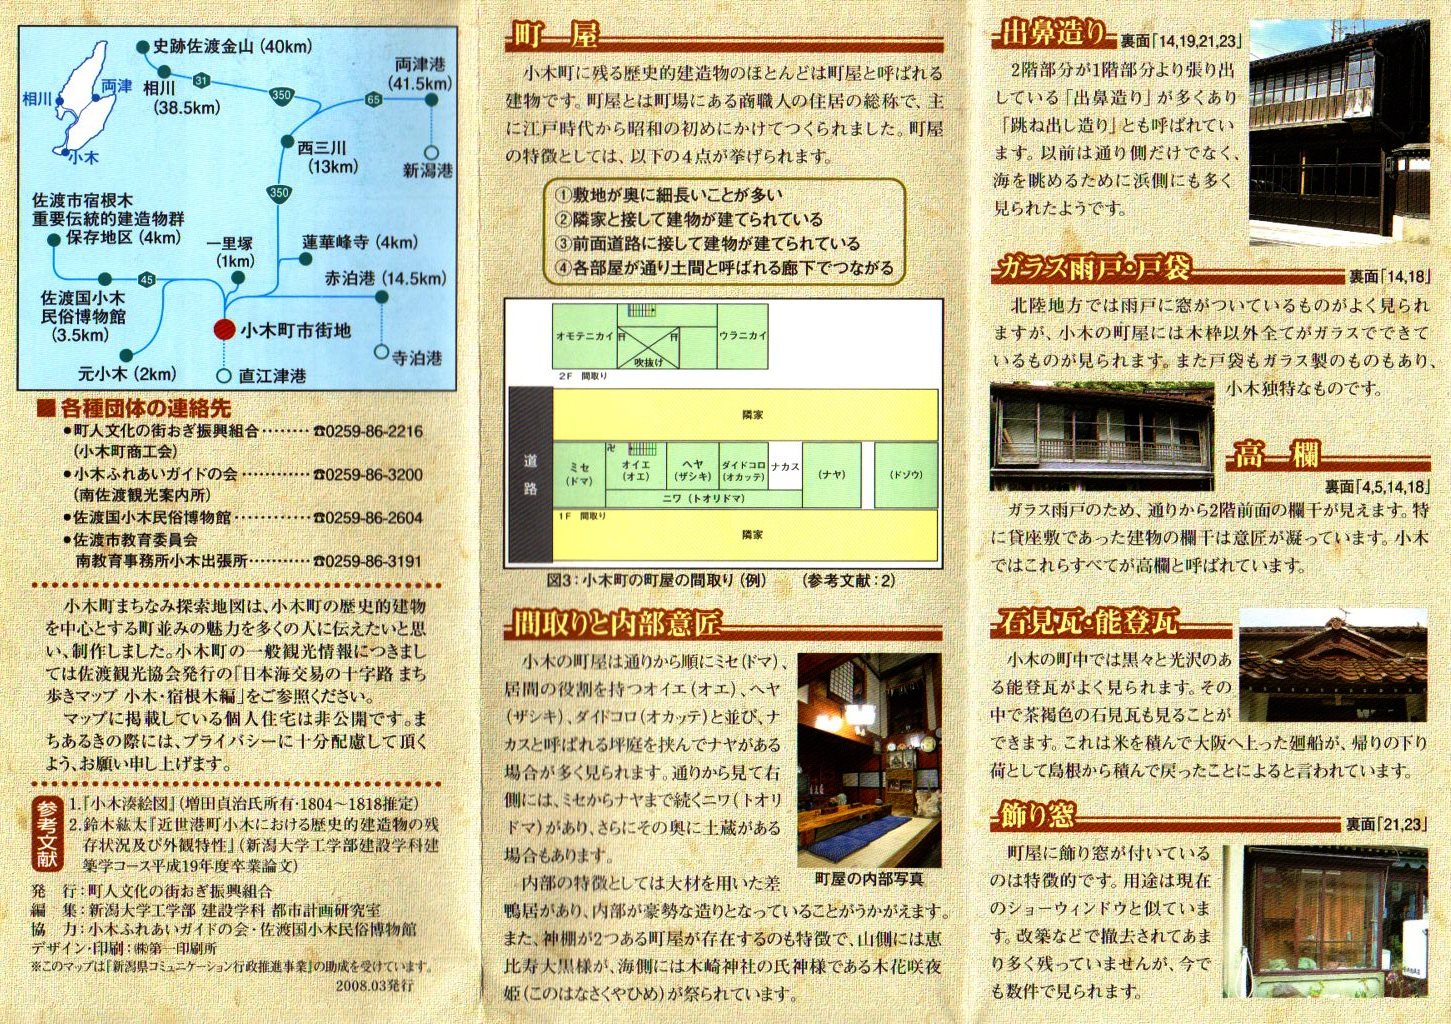 小木町まちなみ探索地図 (2)